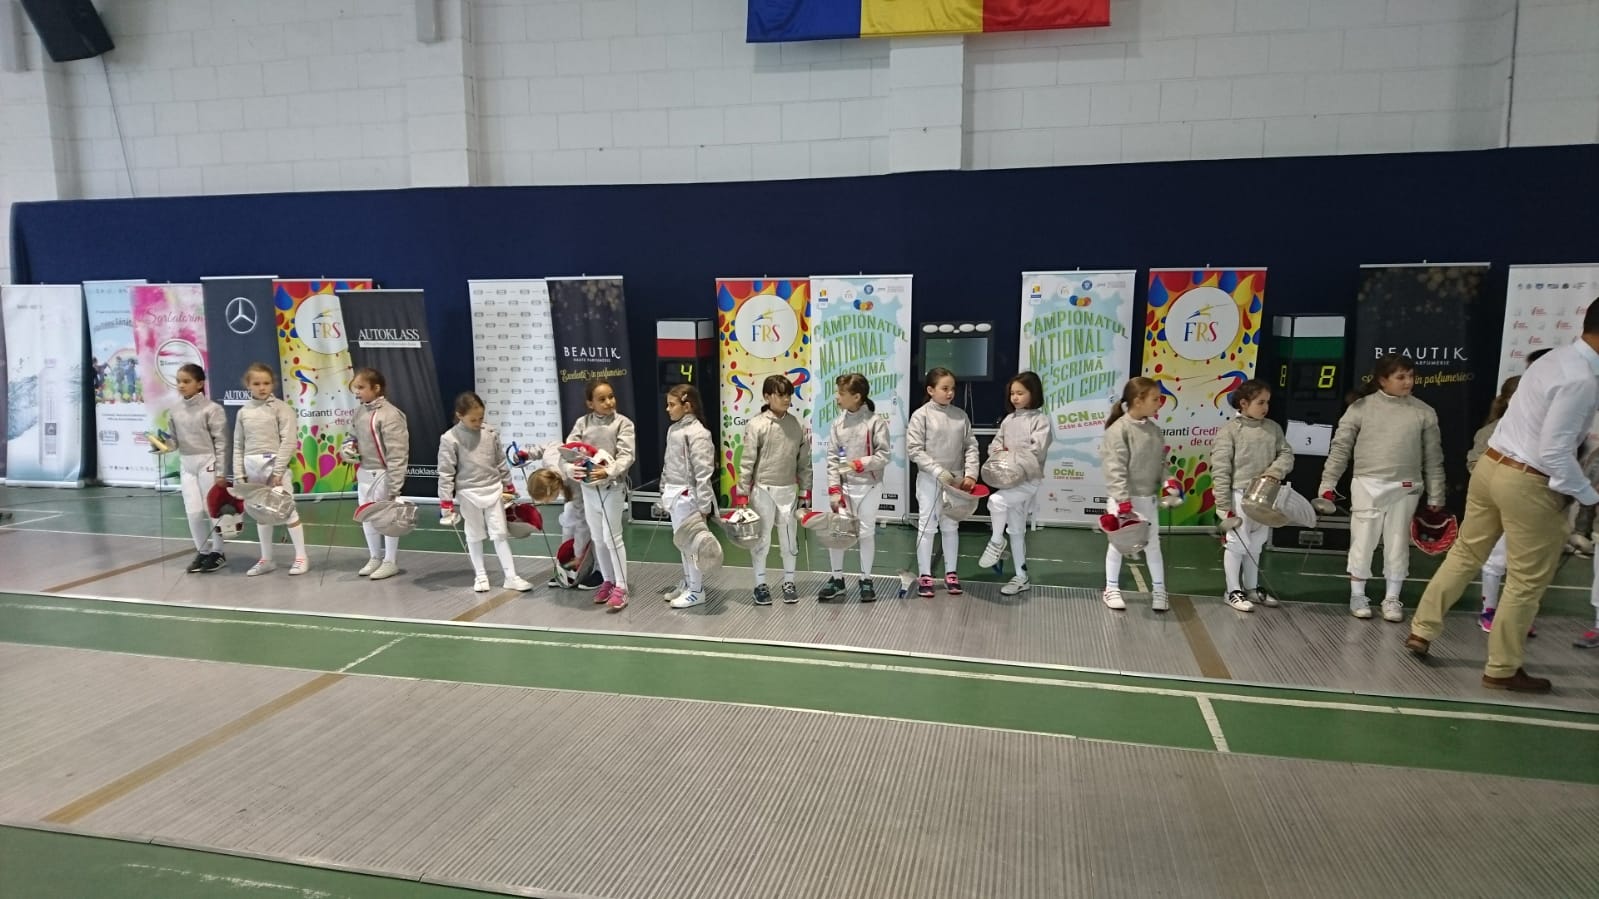 LIVE: Campionatul Național de scrimă pentru copii de la București, ediția 2018, ziua 12: azi au loc probele de sabie feminin la 8-9 ani și pe echipe